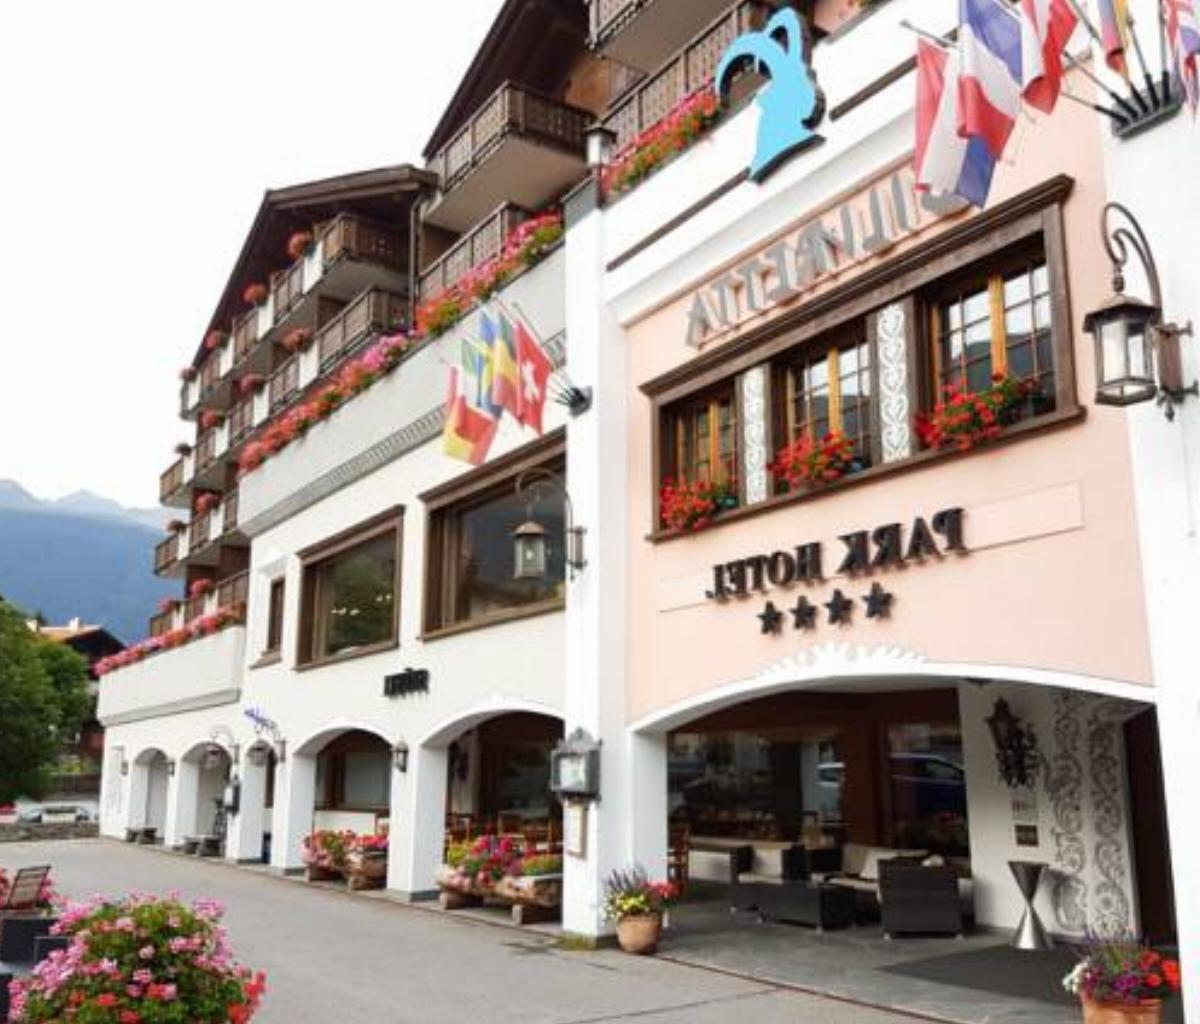 Silvretta Parkhotel Hotel Klosters Switzerland